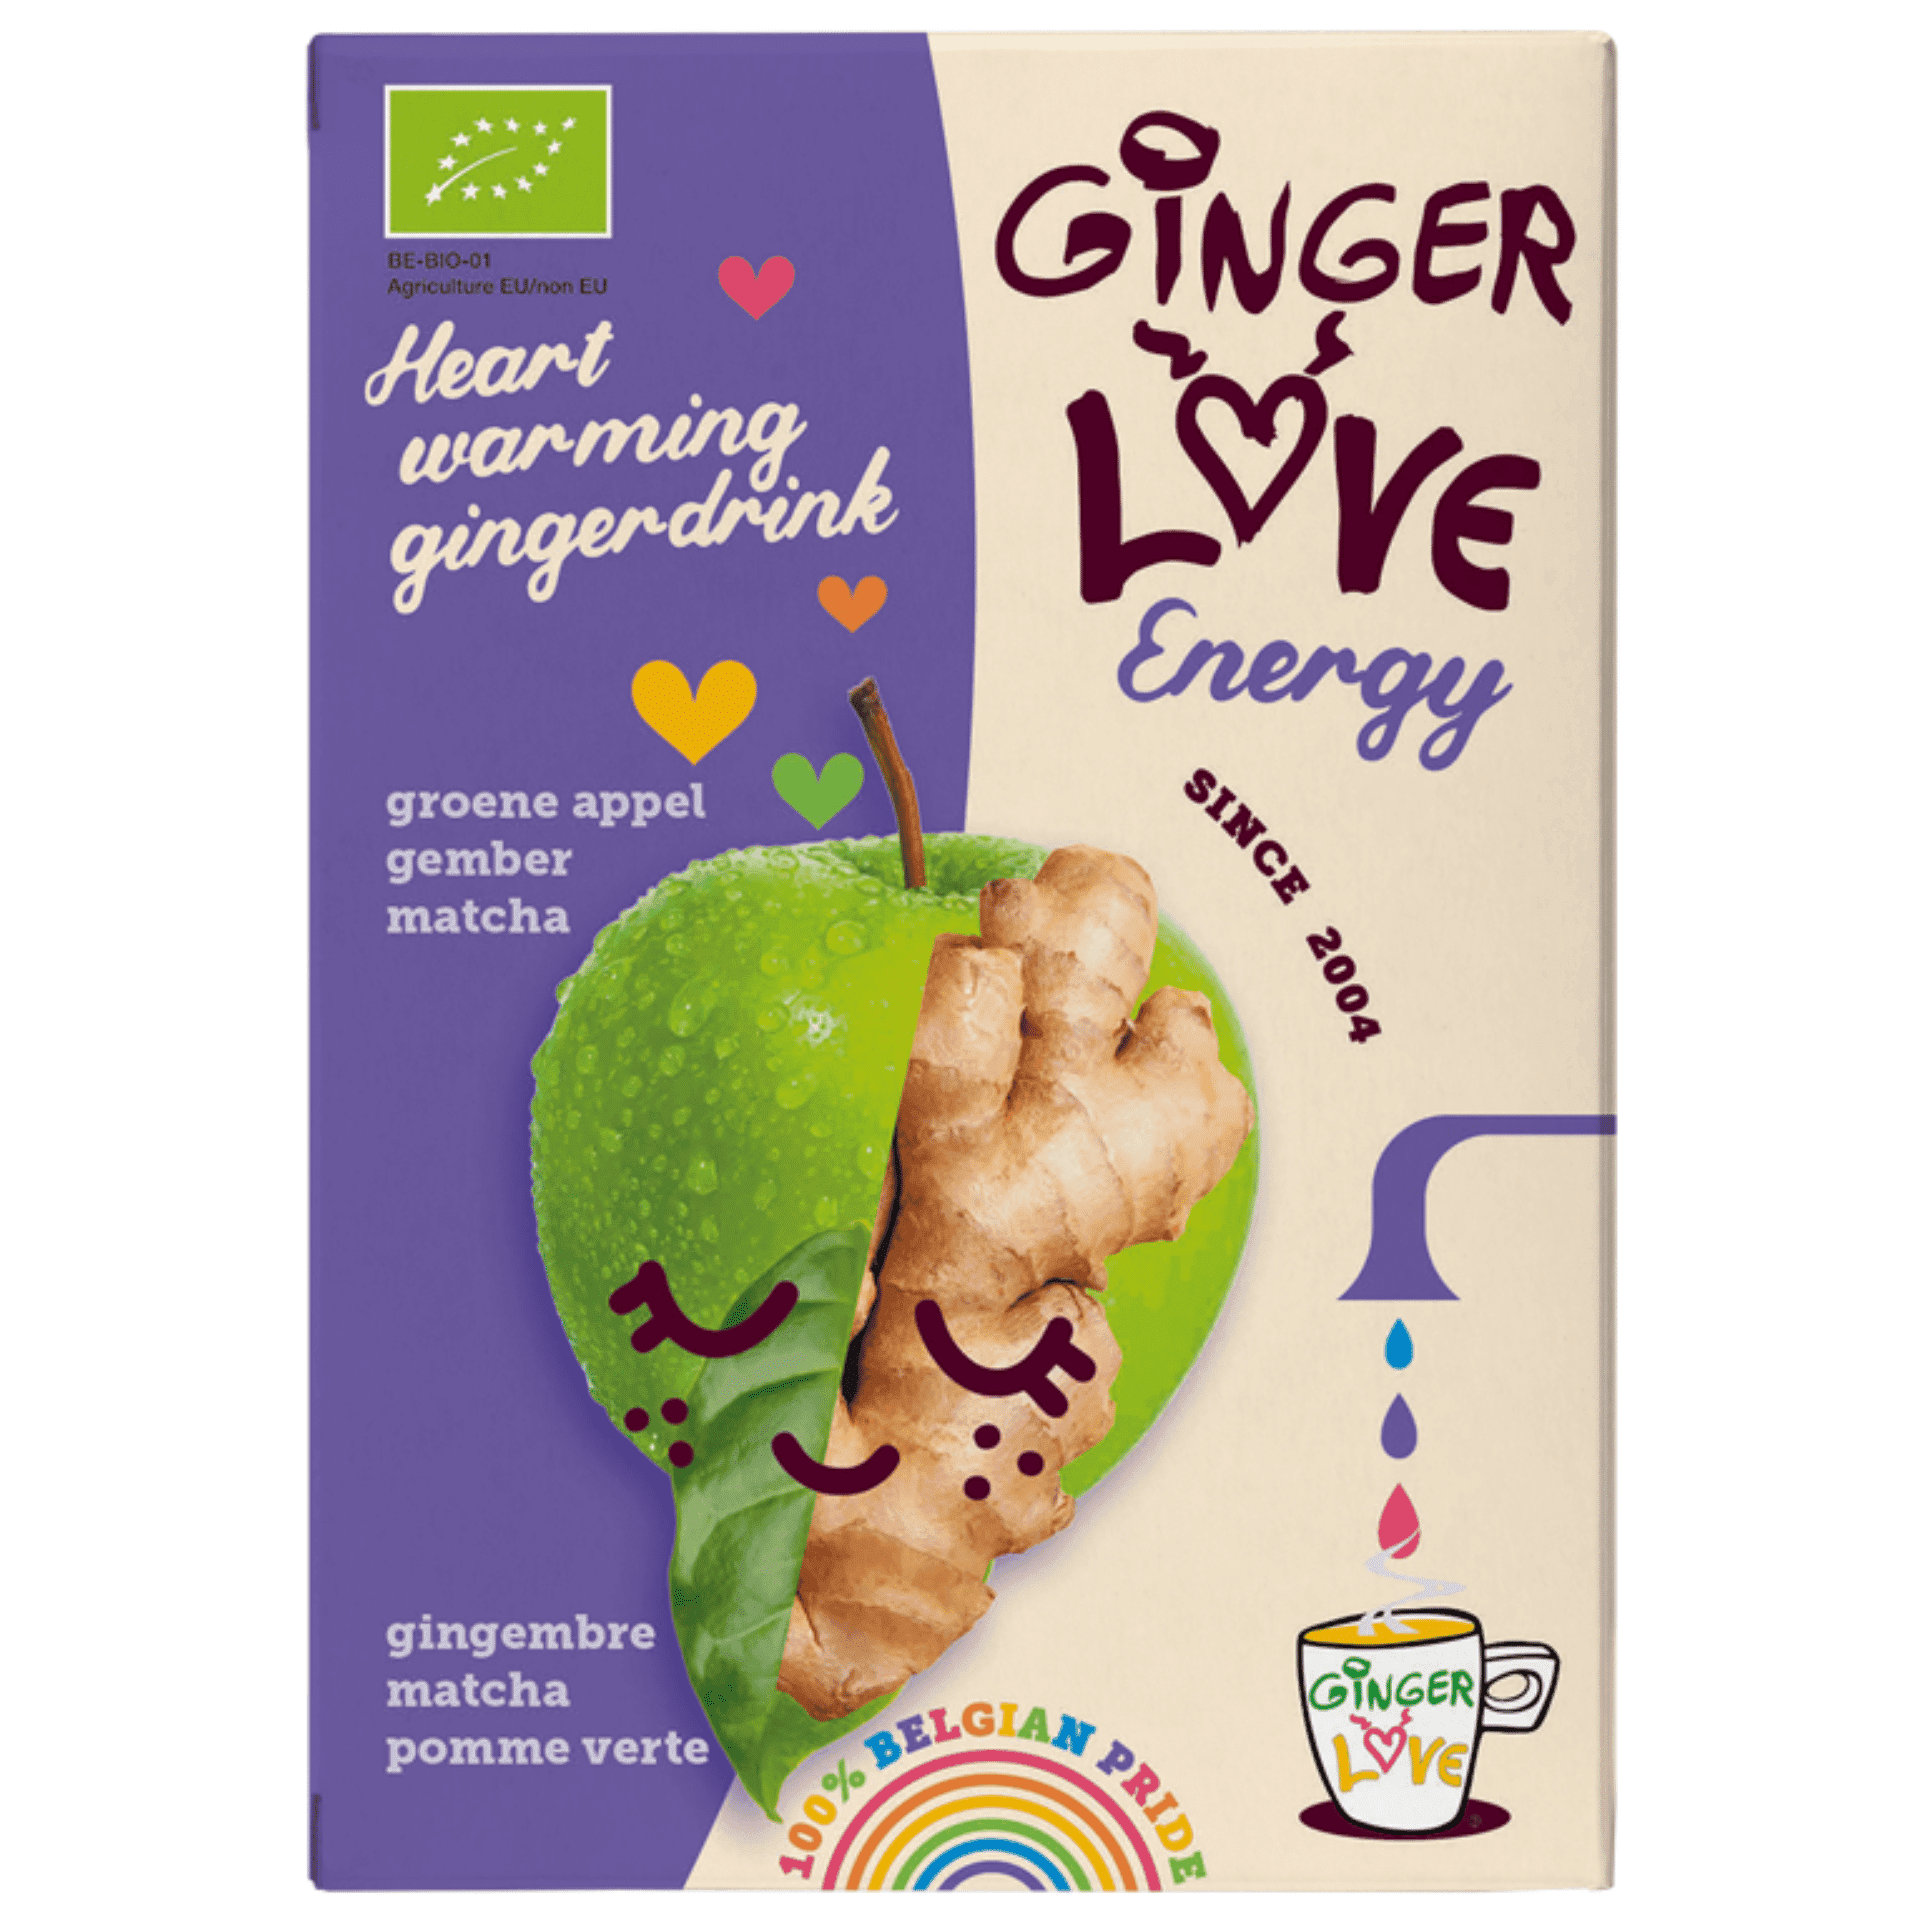 GingerLove Energy